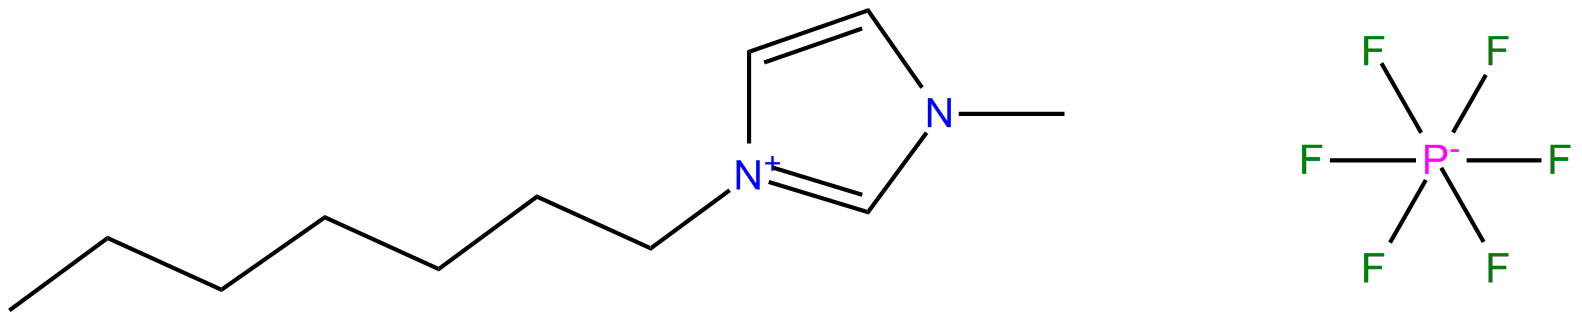 Image of 1-heptyl-3-methylimidazolium hexafluorophosphate